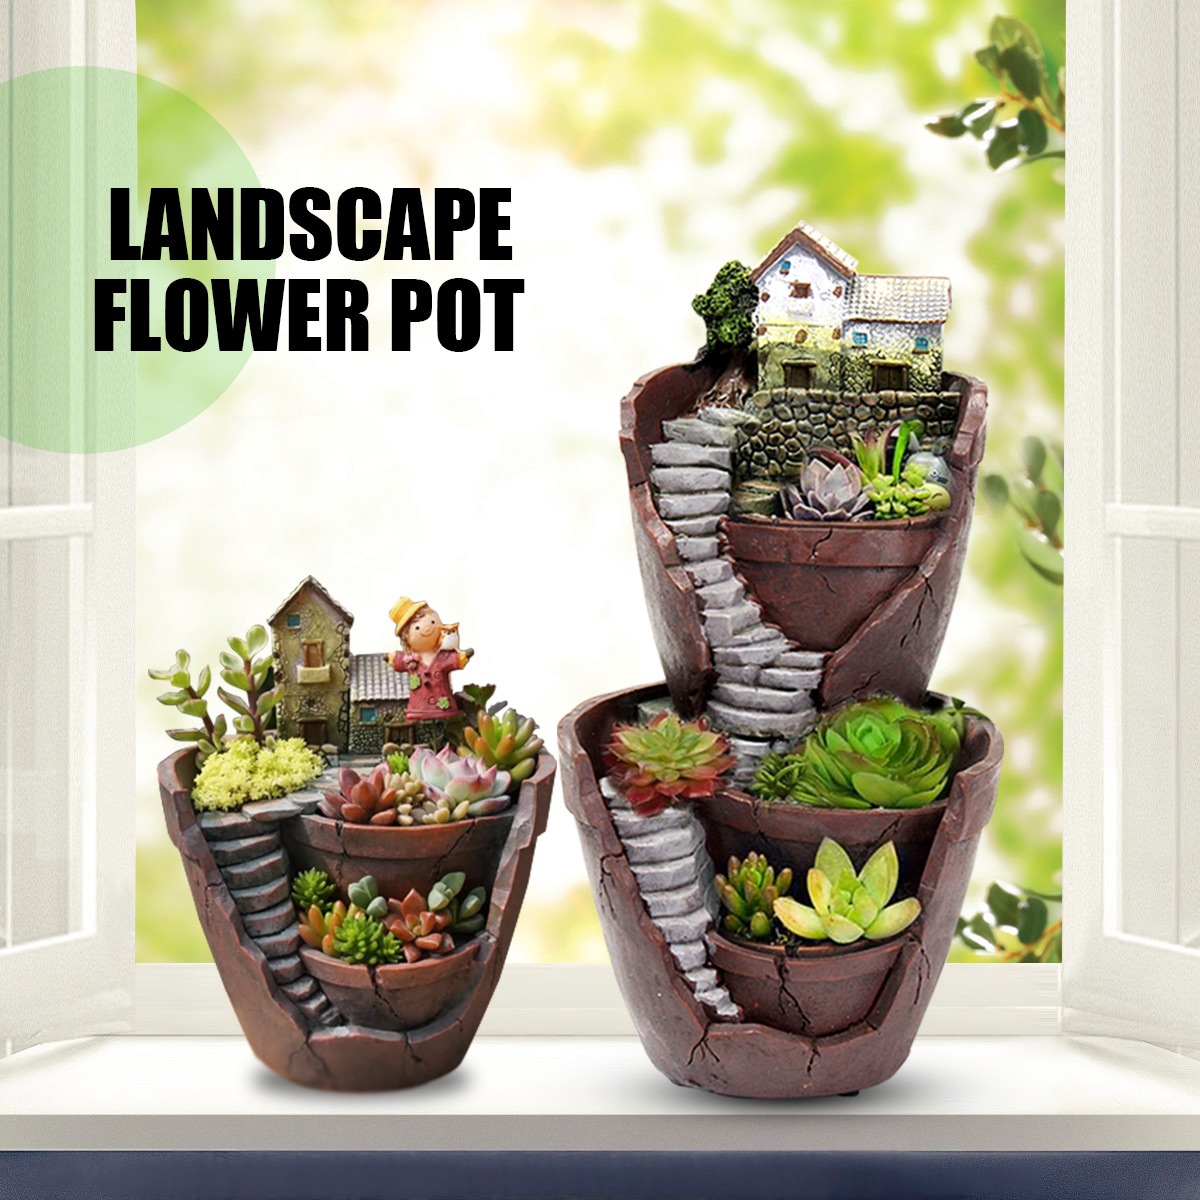 Sky Garden Micro Landscape Flower Pot Planter Bonsai Succulents Plants Garden Pots for Office Home Decoration Craft Ornaments